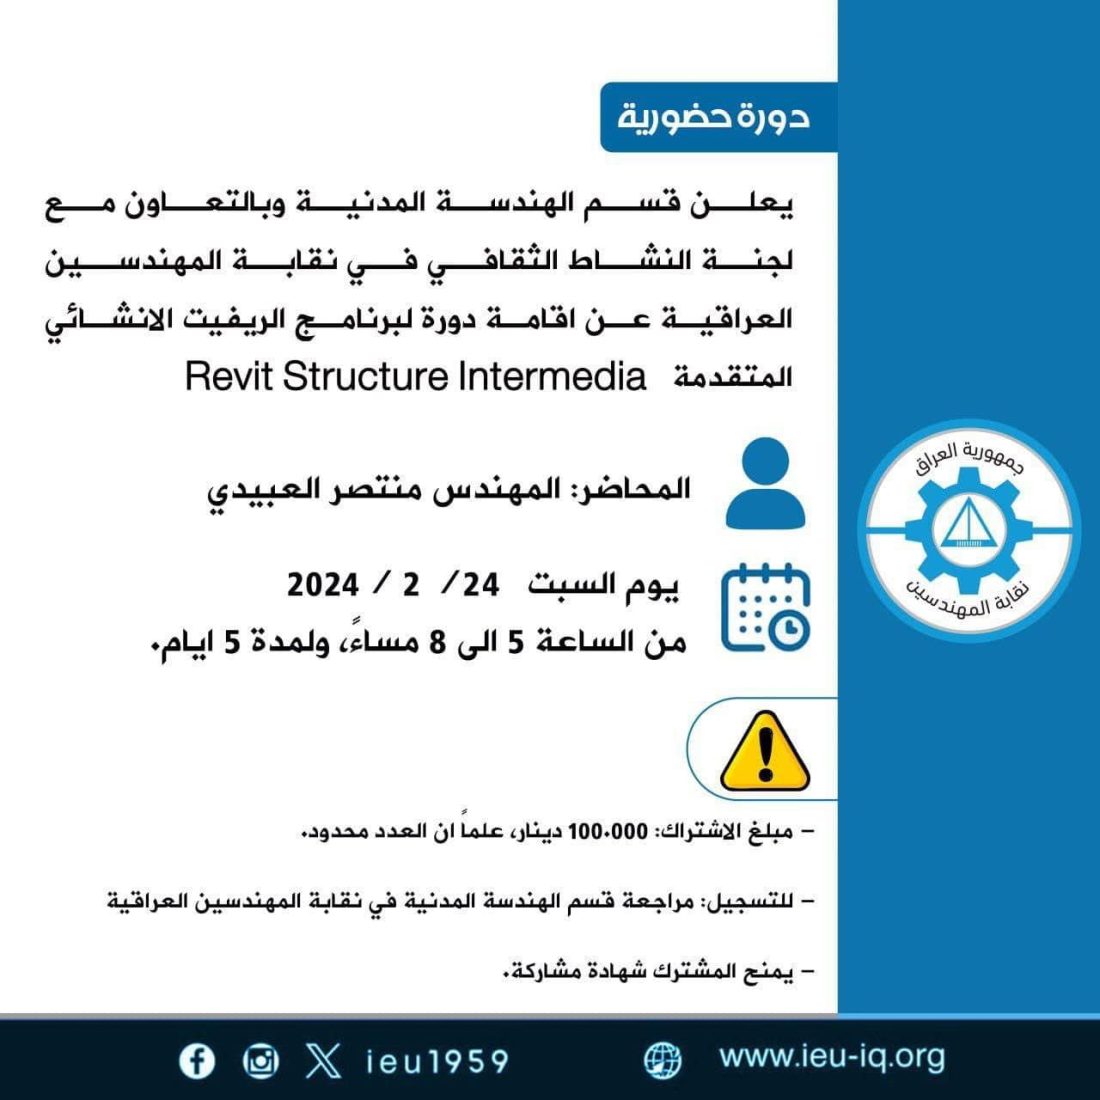 قسم الهندسة المدنية وبالتعاون مع لجنة النشاط الثقافي في نقابة المهندسين العراقية عن اقامة دورة لبرنامج الريفيت الانشائي المتقدمة Revit Structure Intermedia